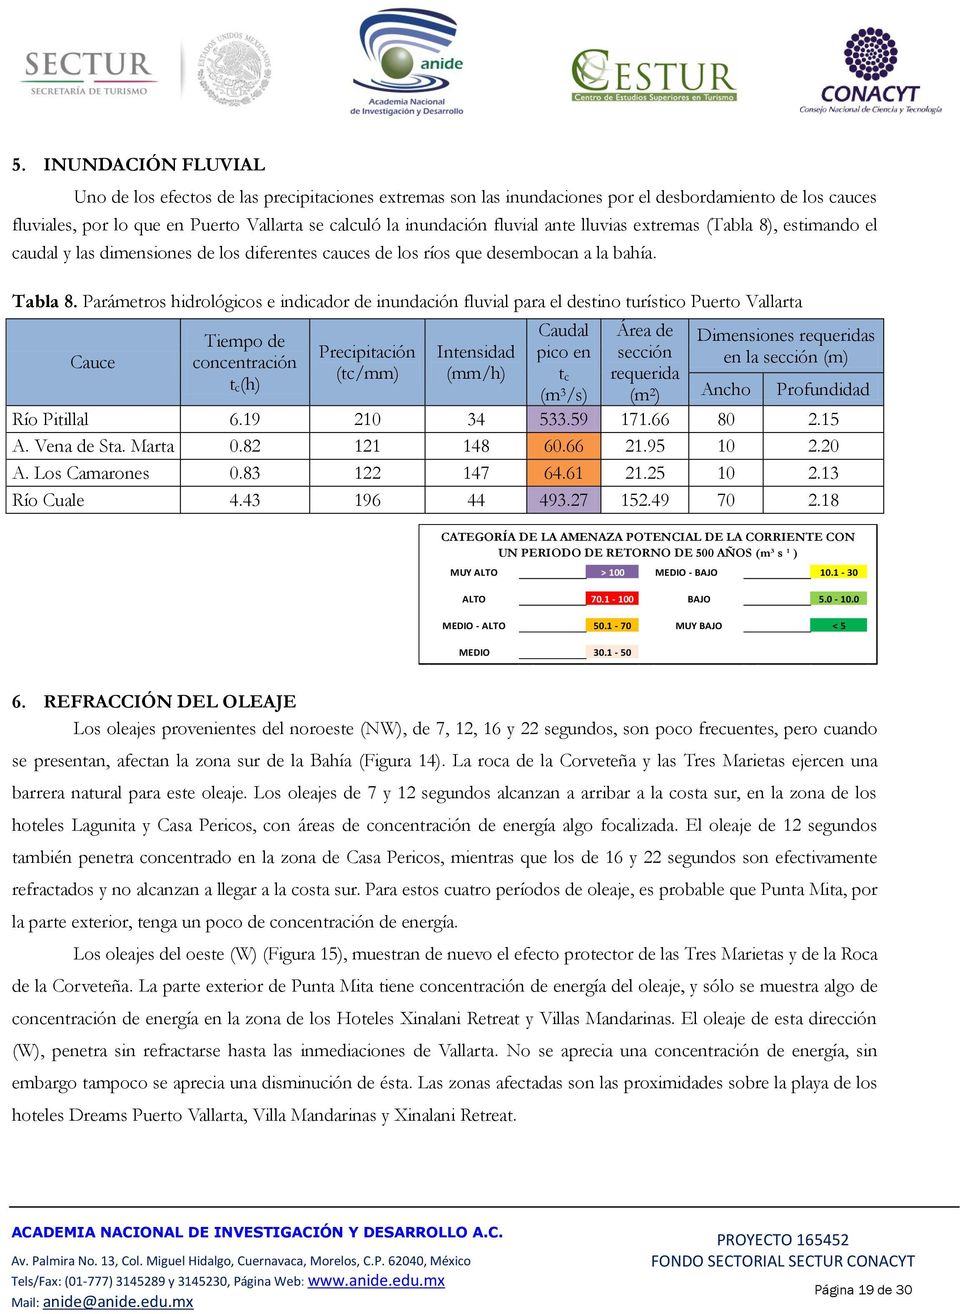 Parámetros hidrológicos e indicador de inundación fluvial para el destino turístico Puerto Vallarta Cauce Tiempo de concentración t c(h) Precipitación (tc/mm) Intensidad (mm/h) Caudal pico en t c (m